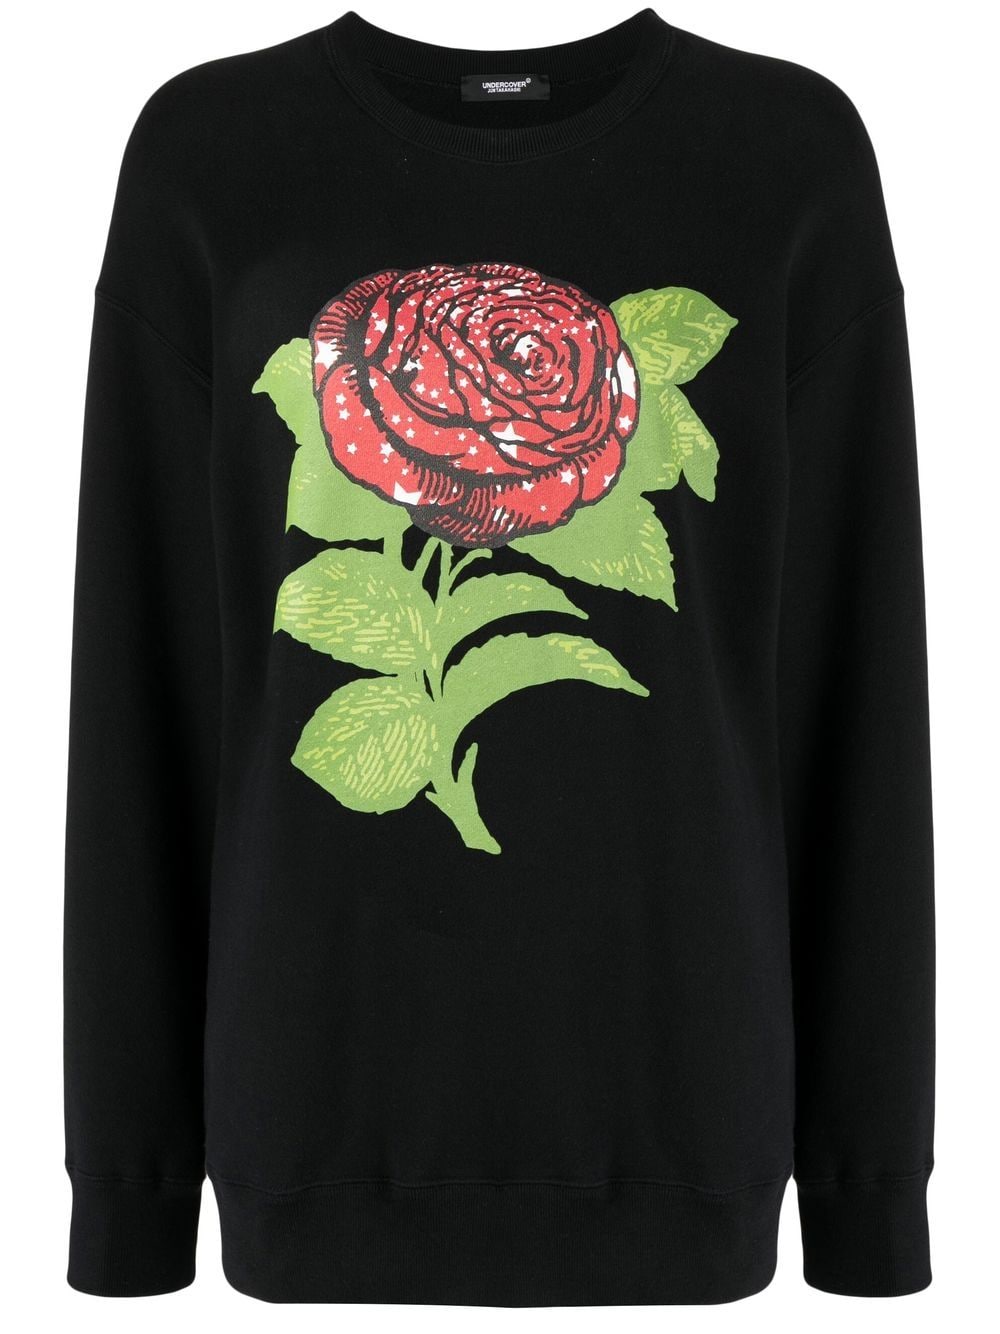 Undercover graphic-print sweatshirt - Black von Undercover